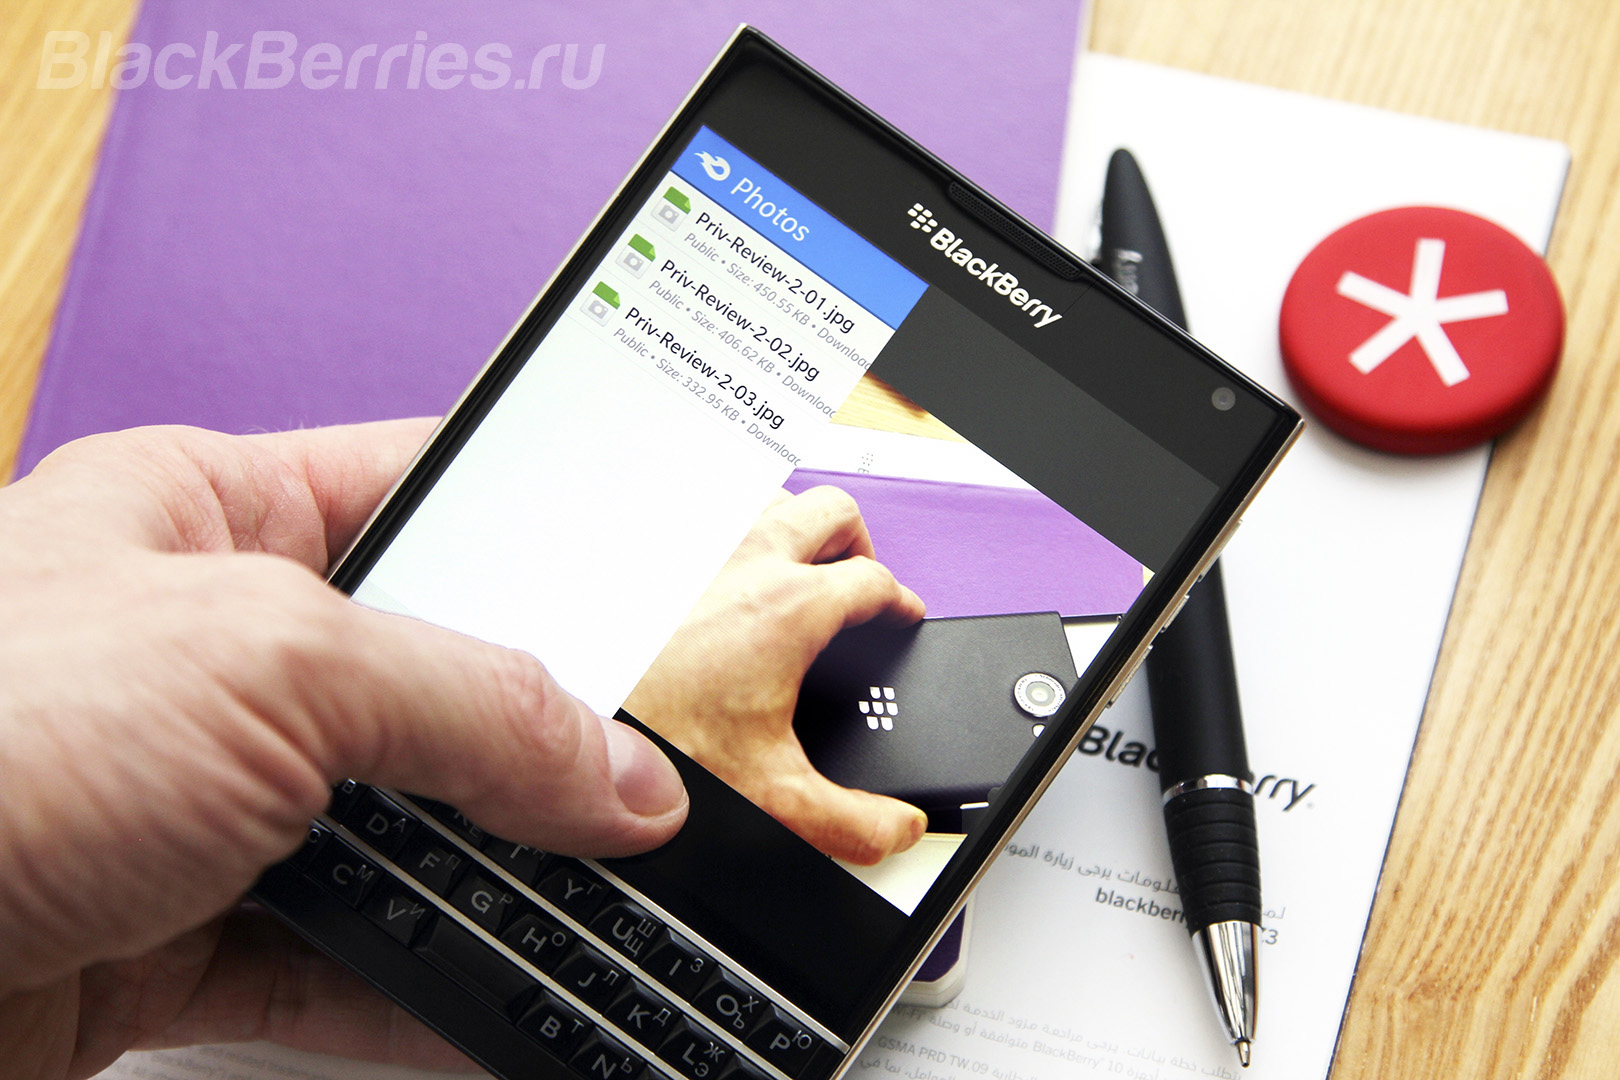 BlackBerry-Apps-21-11-22